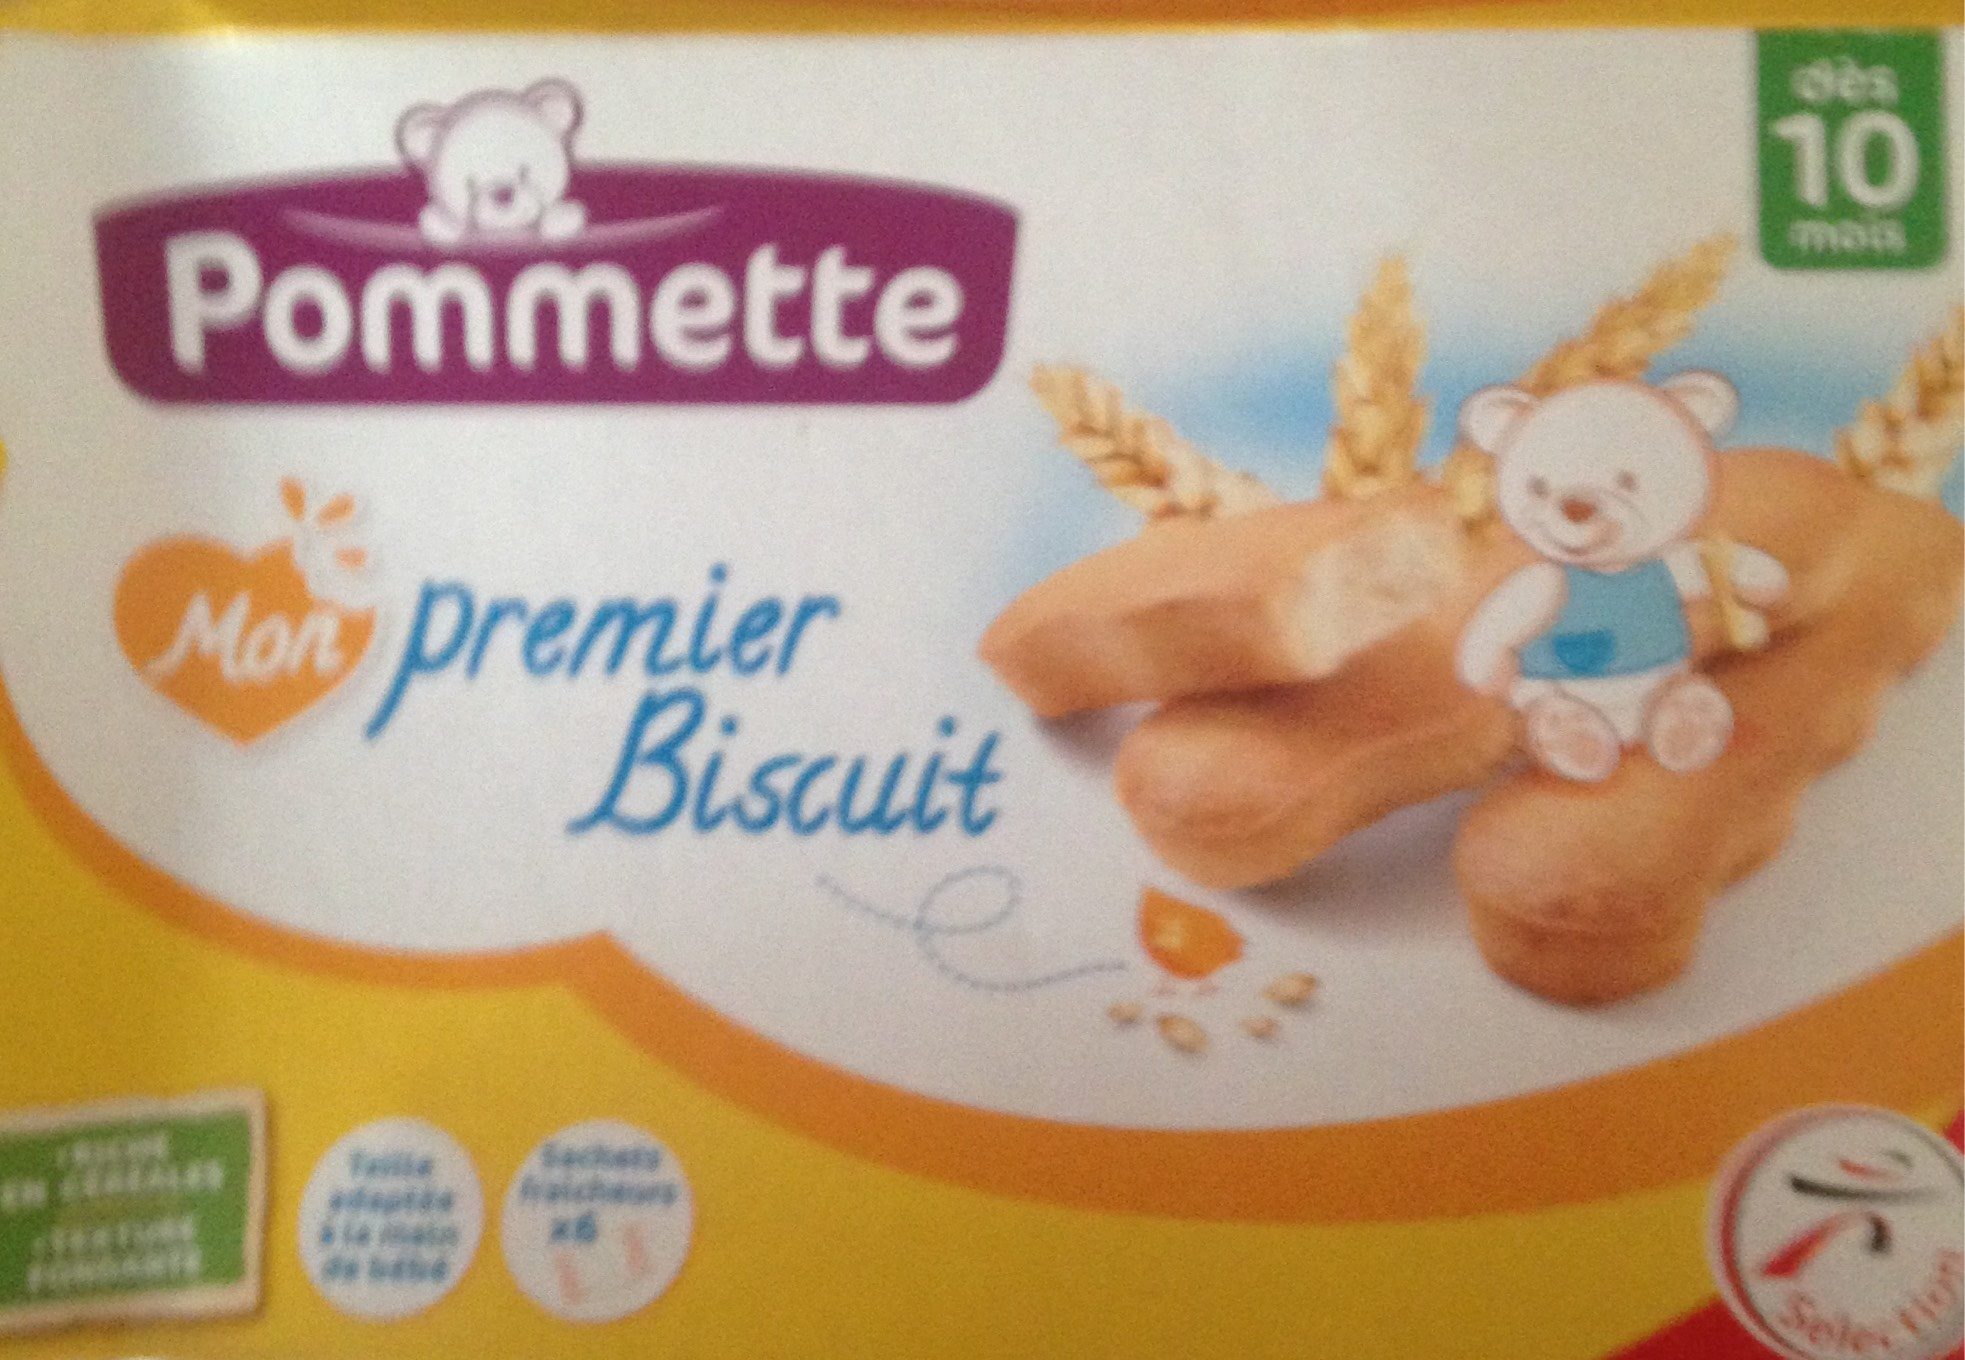 Mon premier biscuit - Product - fr